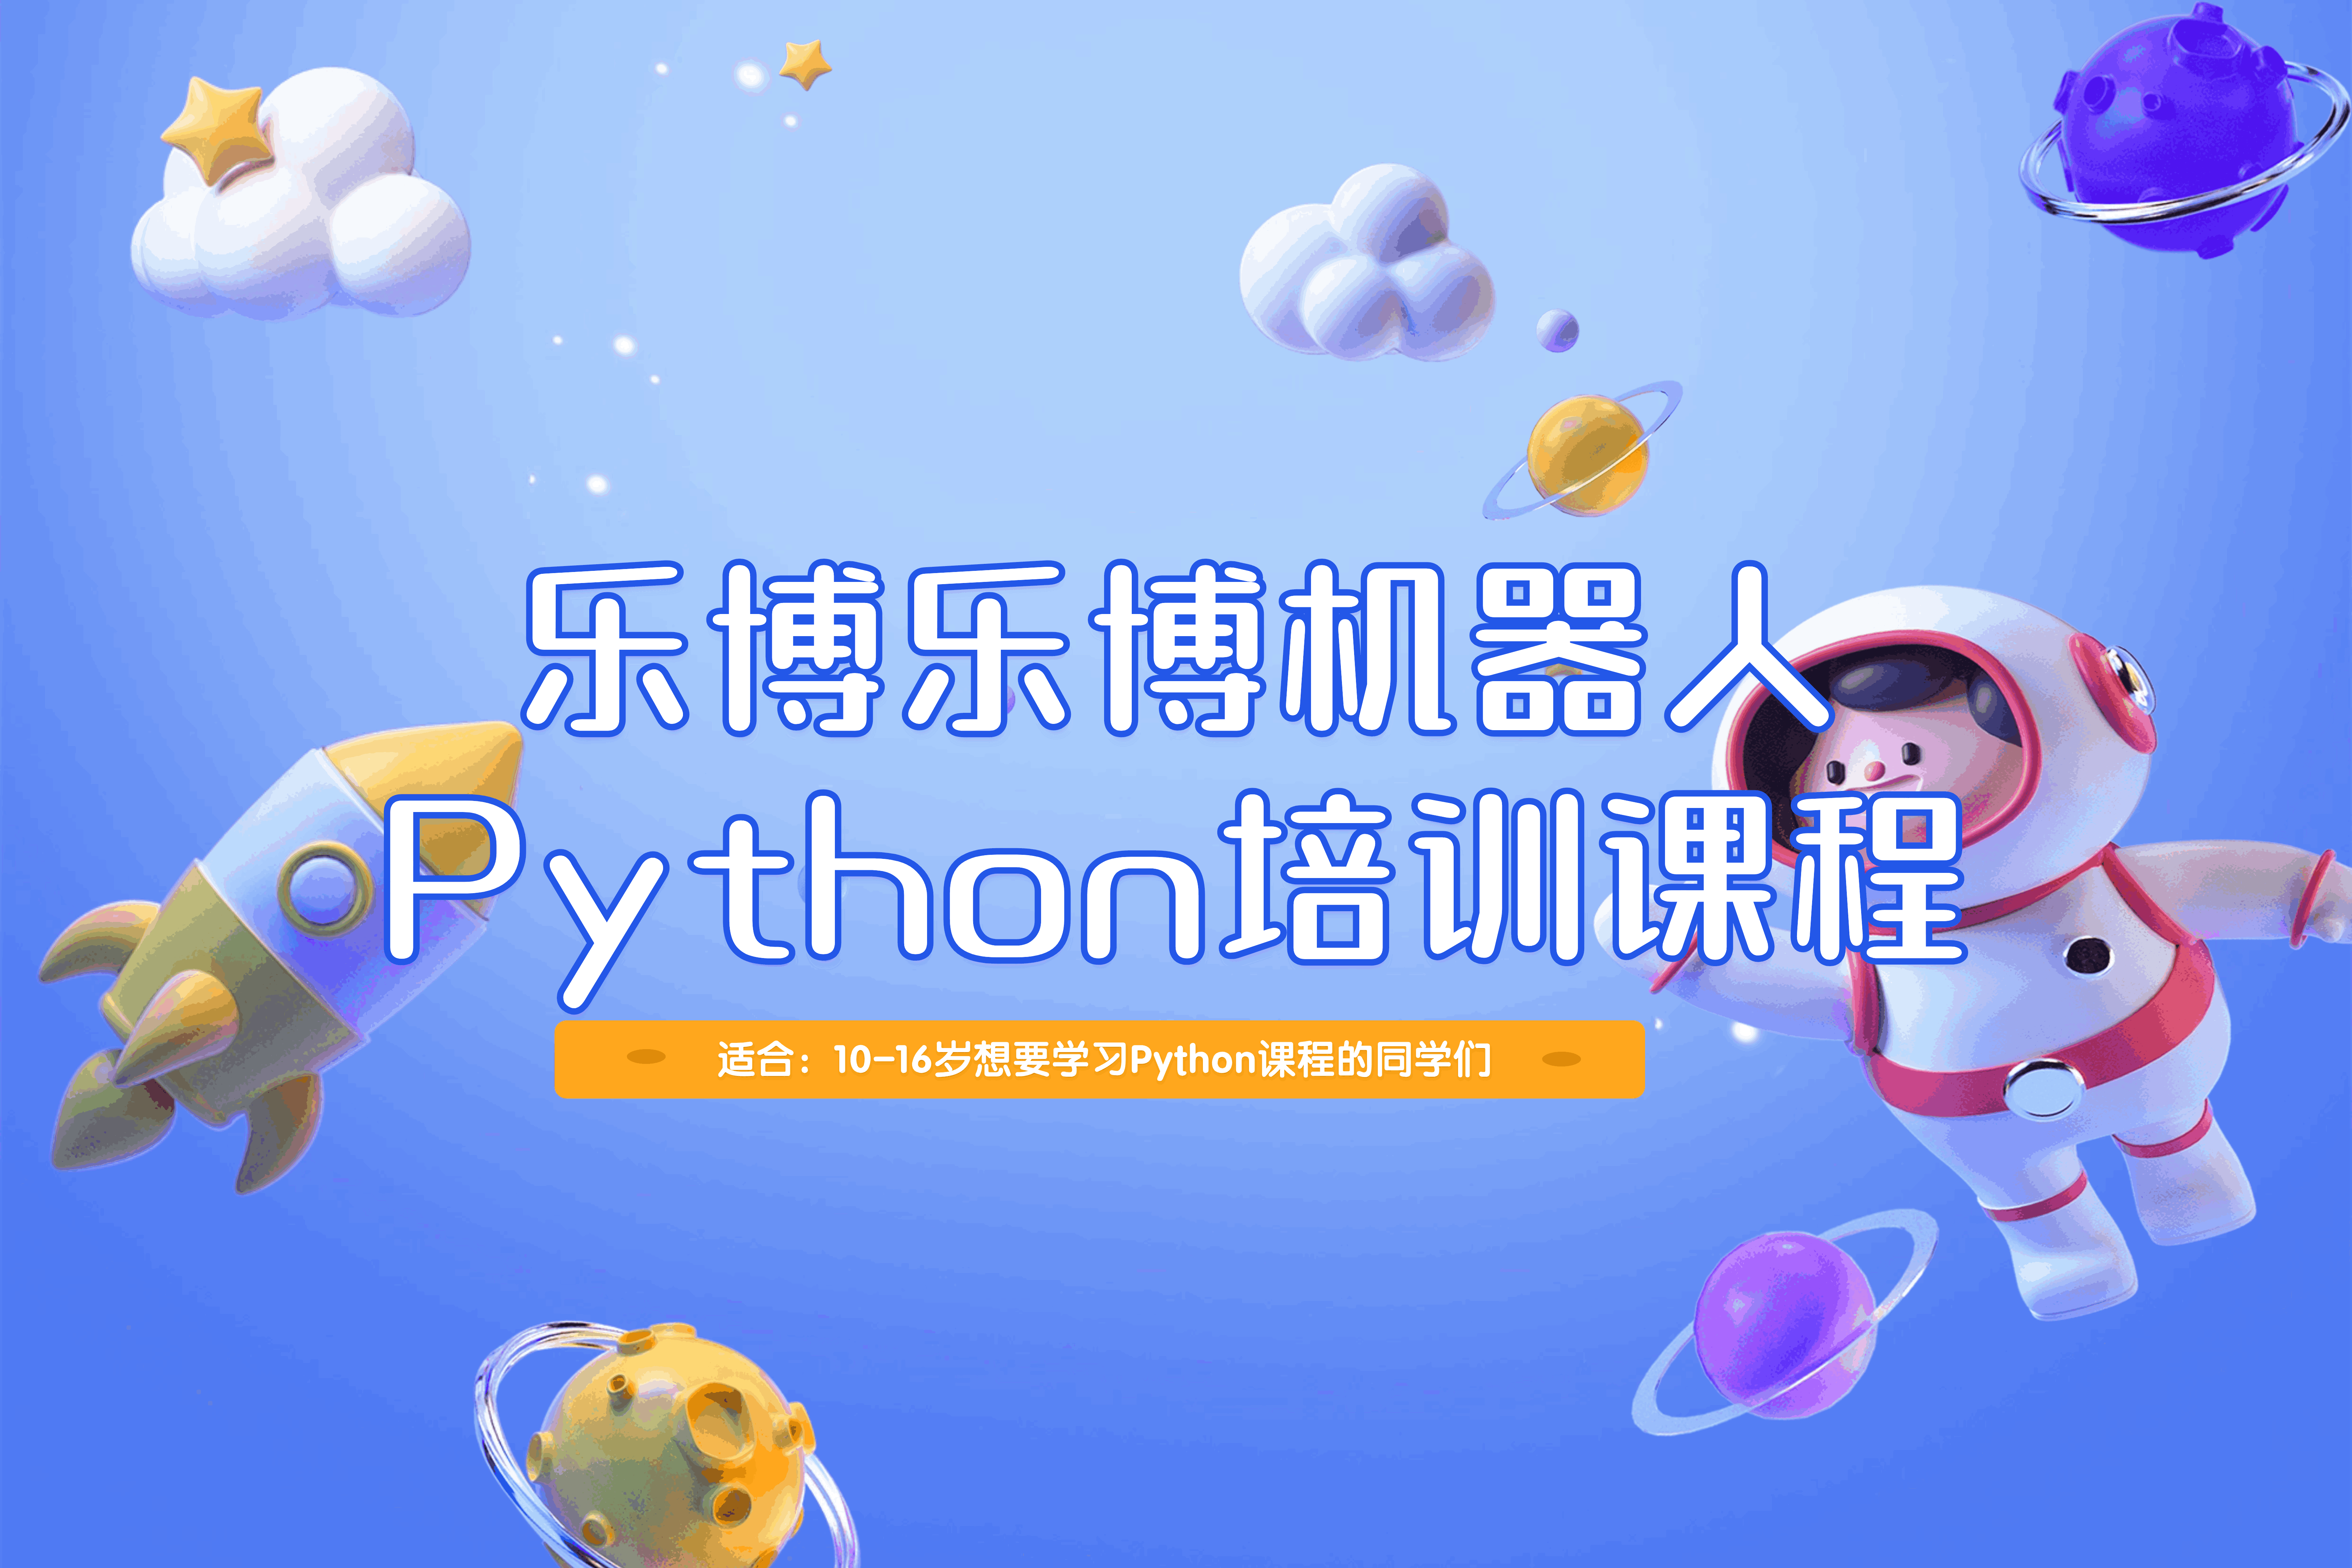 北京乐博乐博机器人北京乐博乐博Python培训课程图片